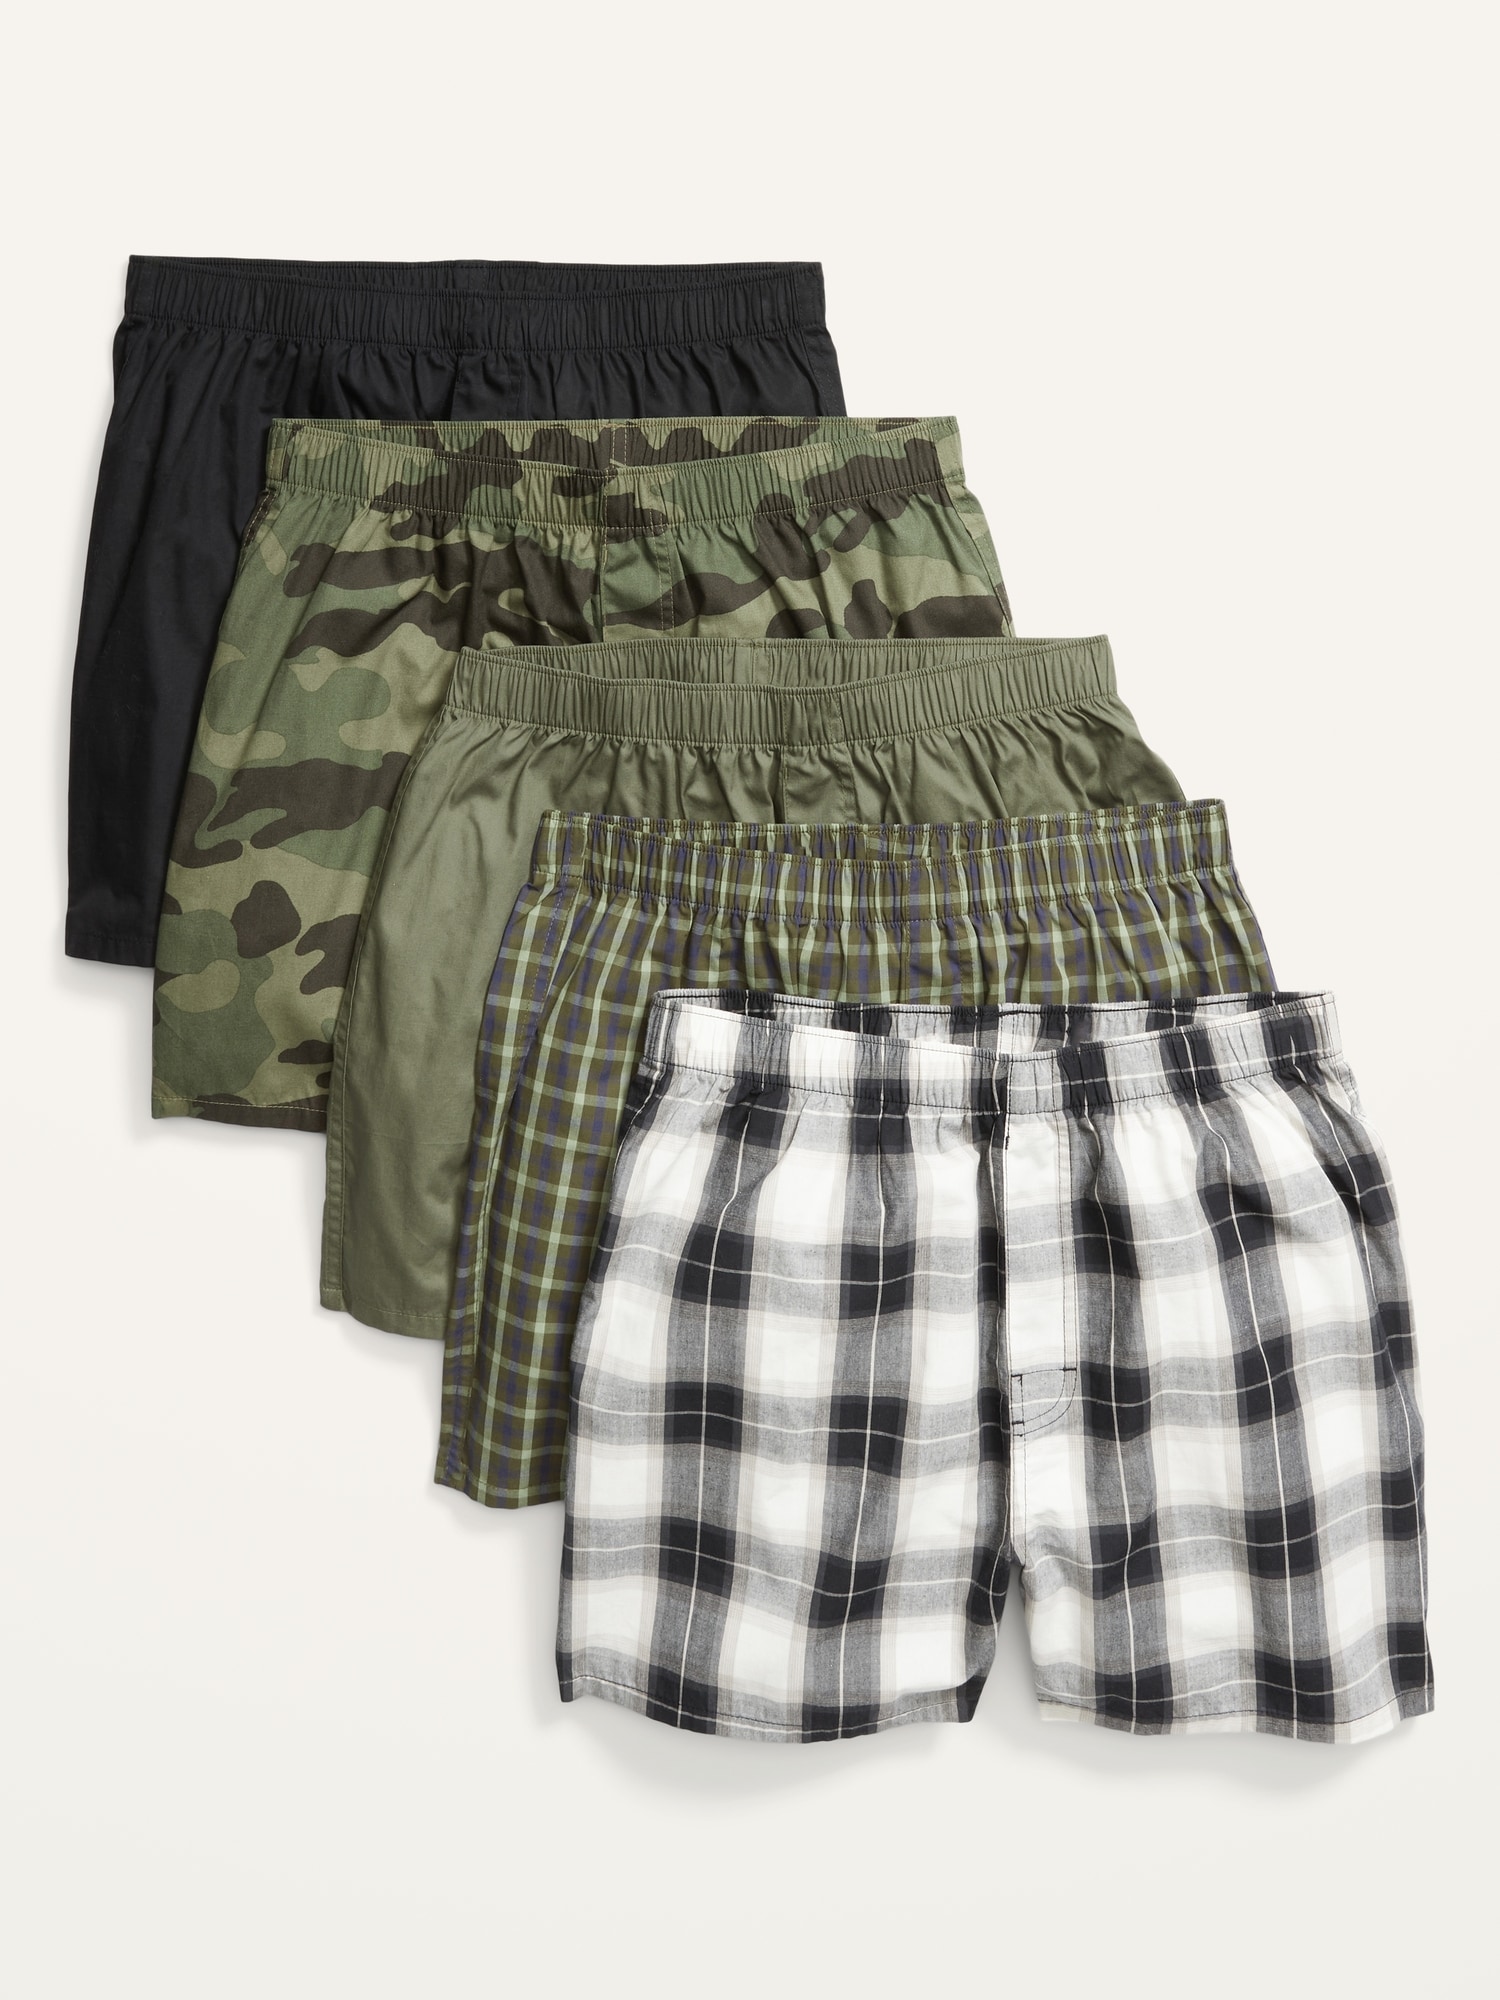 Soft-Washed Boxer Shorts 5-Pack for Men